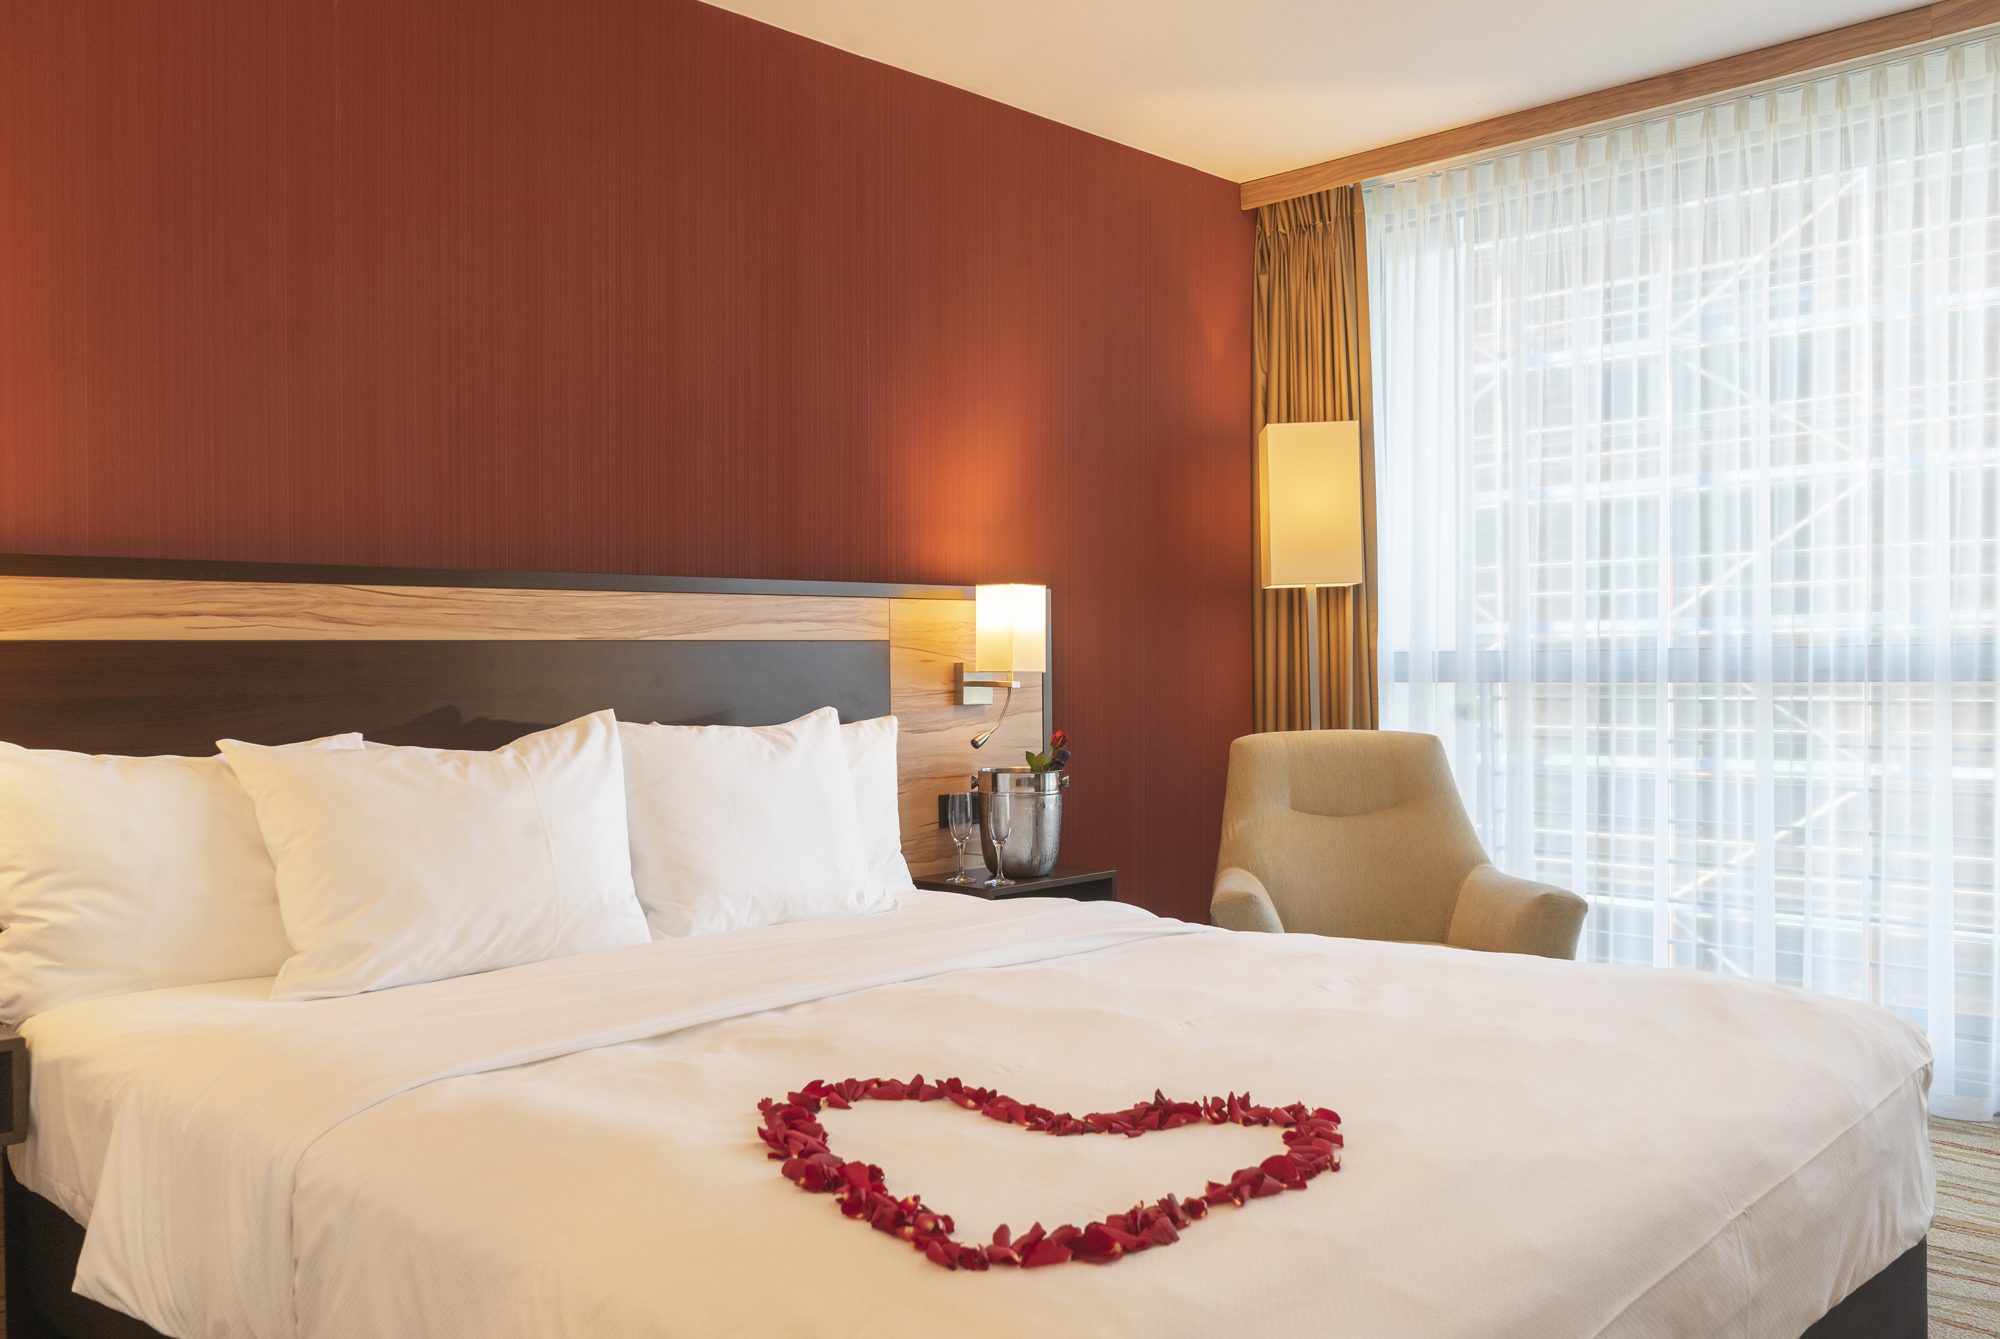 COURTYARD BY MARRIOTT DÜSSELDORF HOTELS: Mit Romantik dem Alltag entfliehen